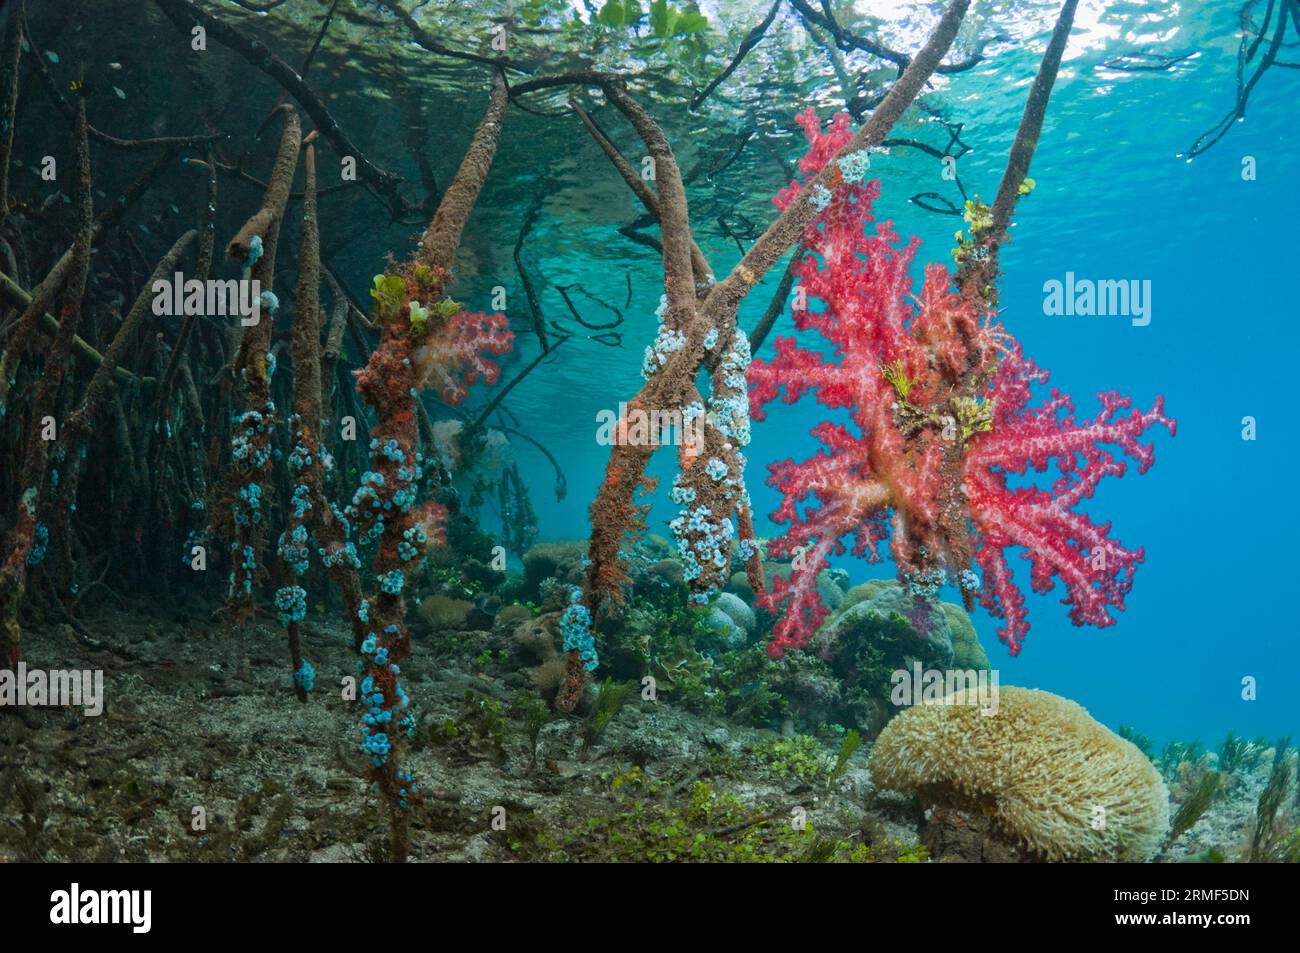 Manglar (Rhizophora sp.) raíces en el borde del arrecife de coral. Invertebrados y coral blando que crecen en las raíces. Raja Ampat, Indonesia. Foto de stock